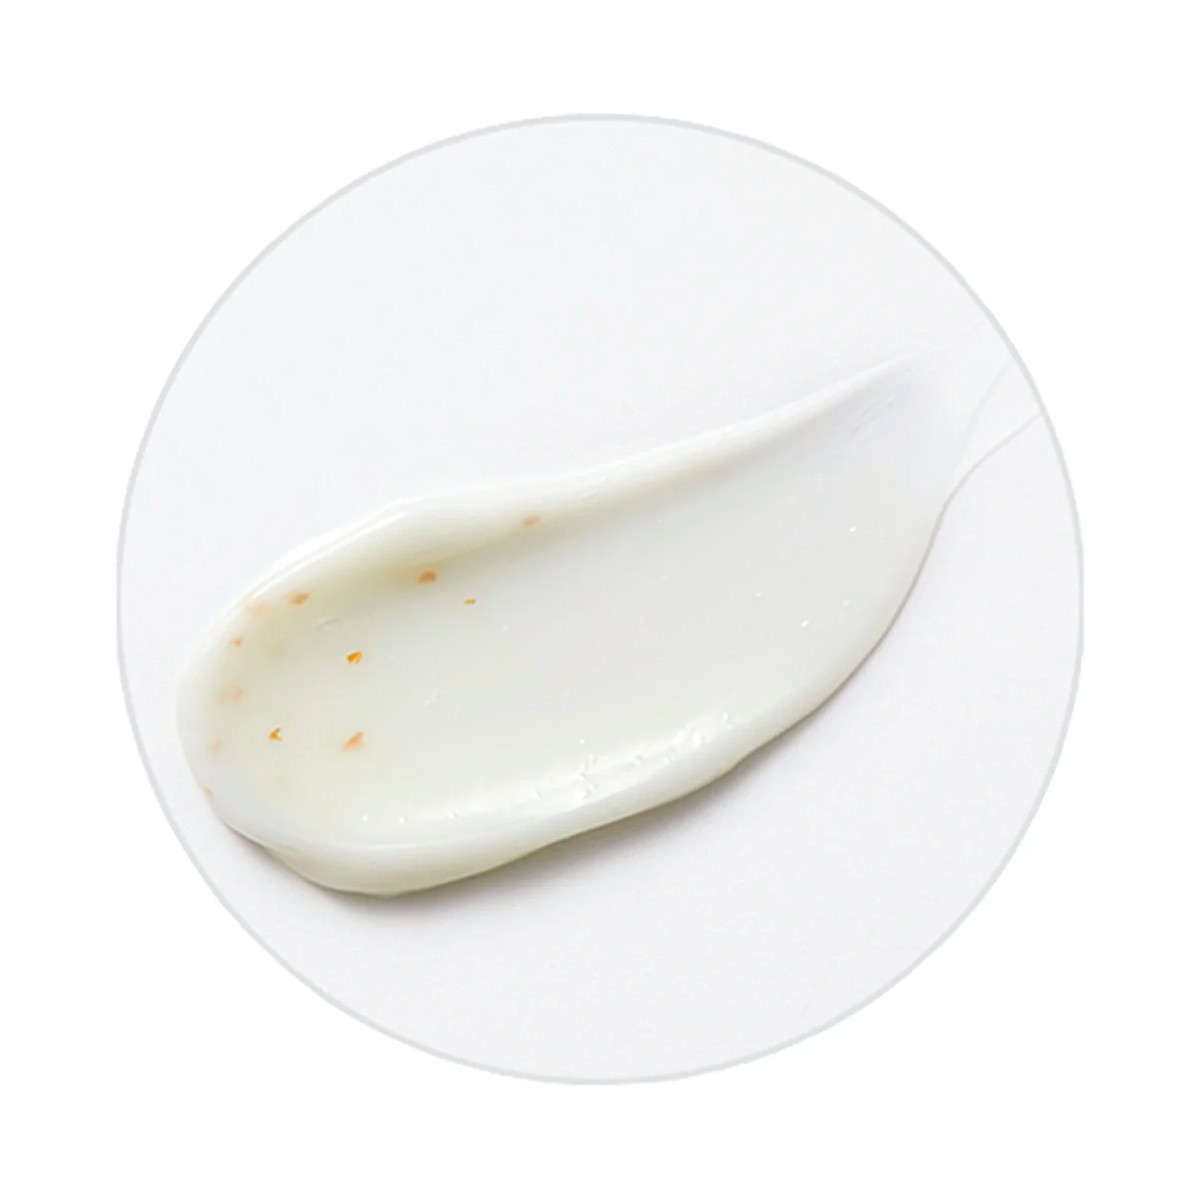 Emulsiones y Cremas al mejor precio: Missha Chogongjin Geum Sul Emulsion 120ml de Missha en Skin Thinks - Piel Seca